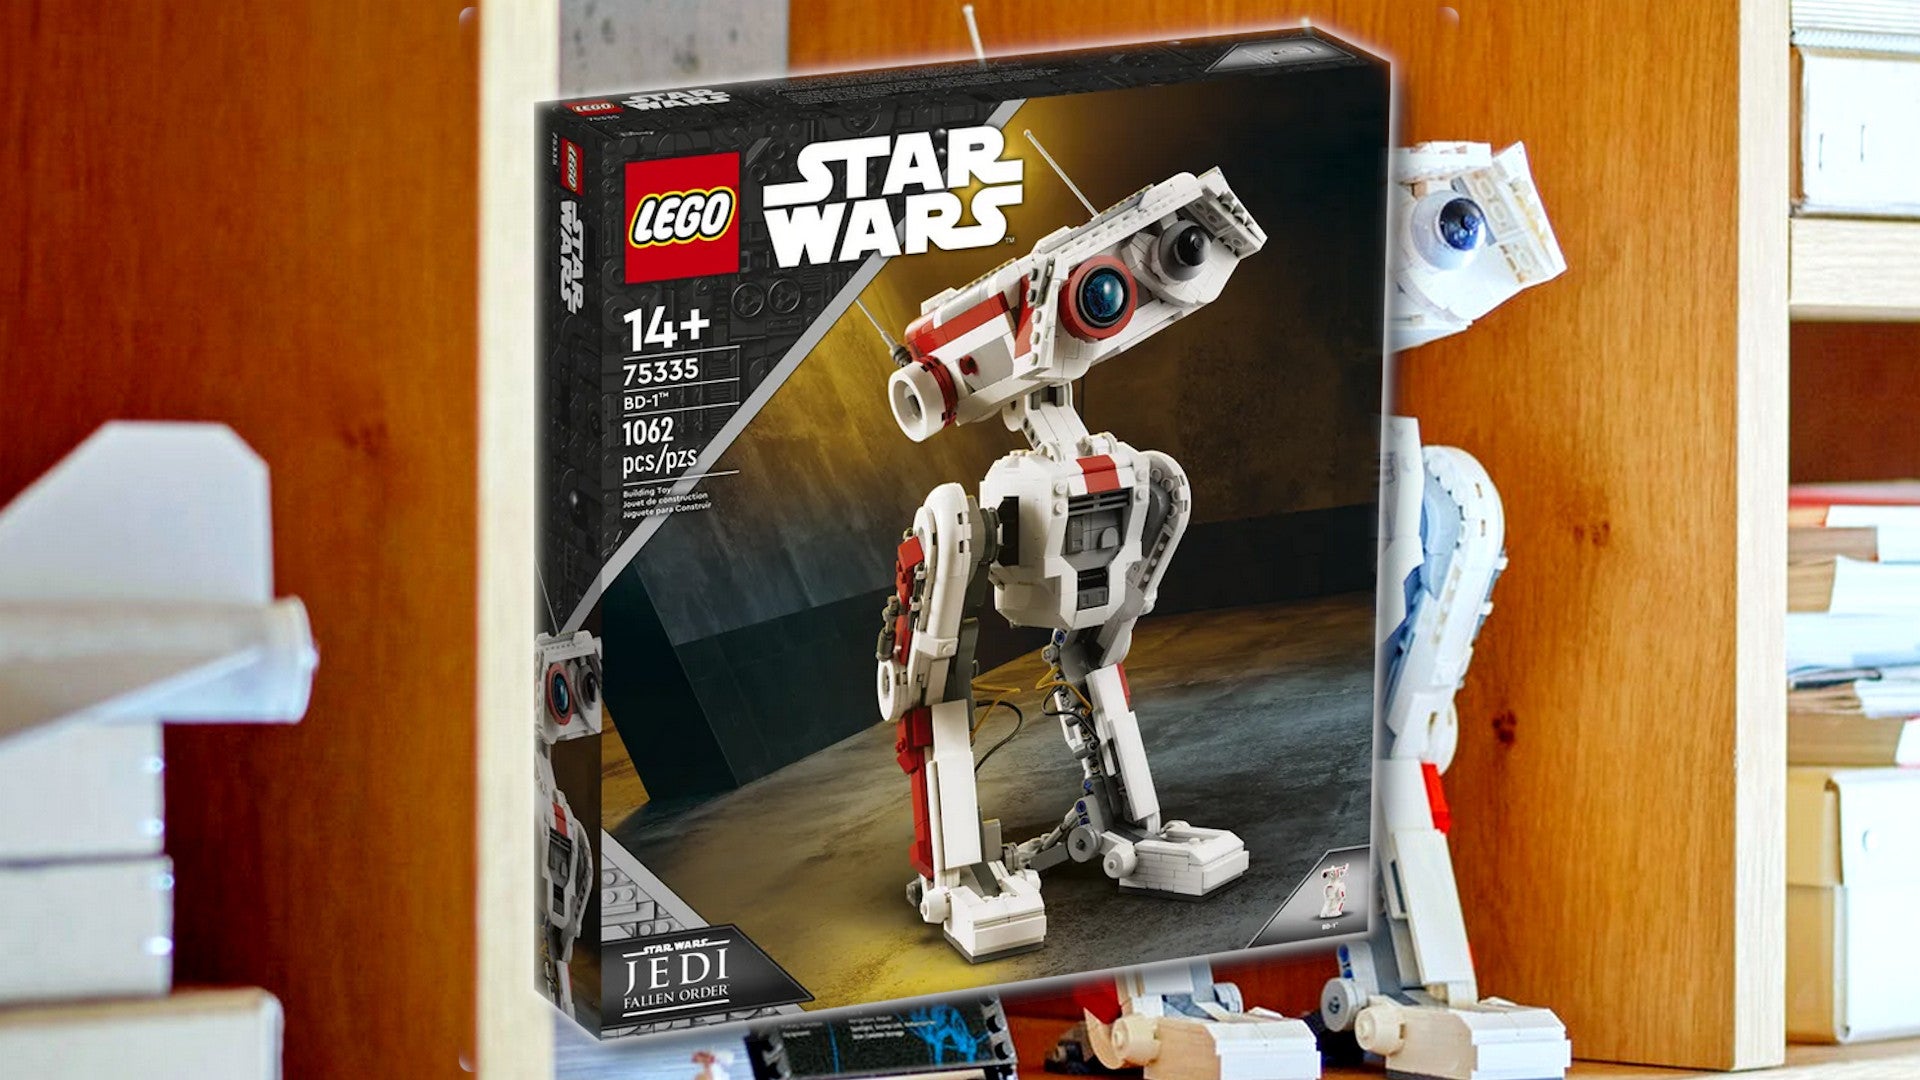 Bilder zu Star Wars Jedi Survivor: BD-1 als Lego-Set jetzt erhältlich (Update)